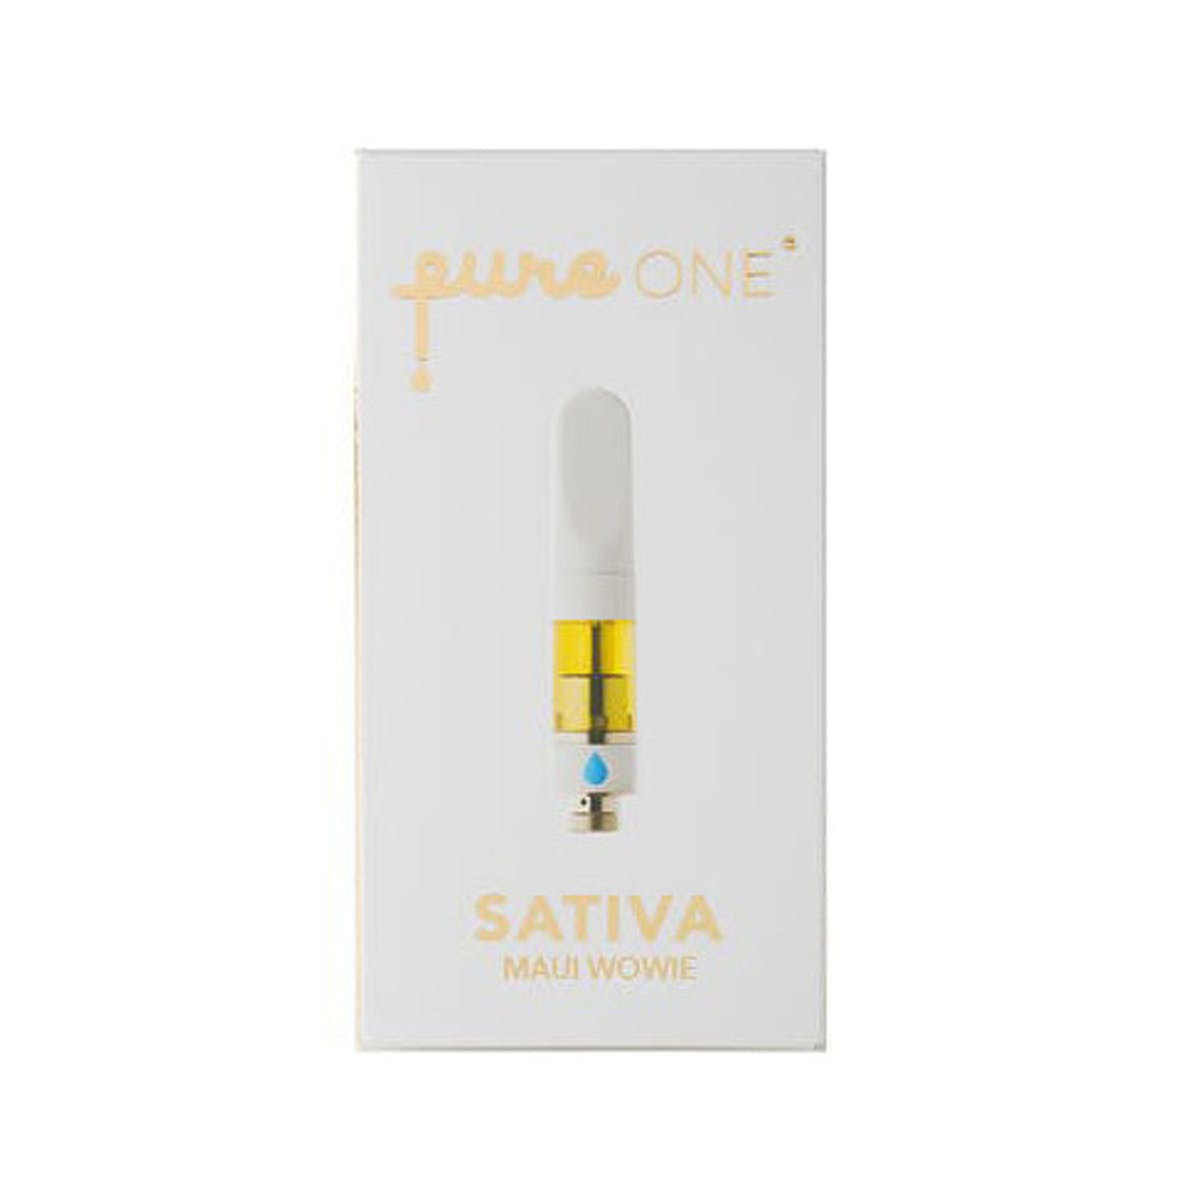 Sativa PureONE CO2 Cartridge - Maui Wowie